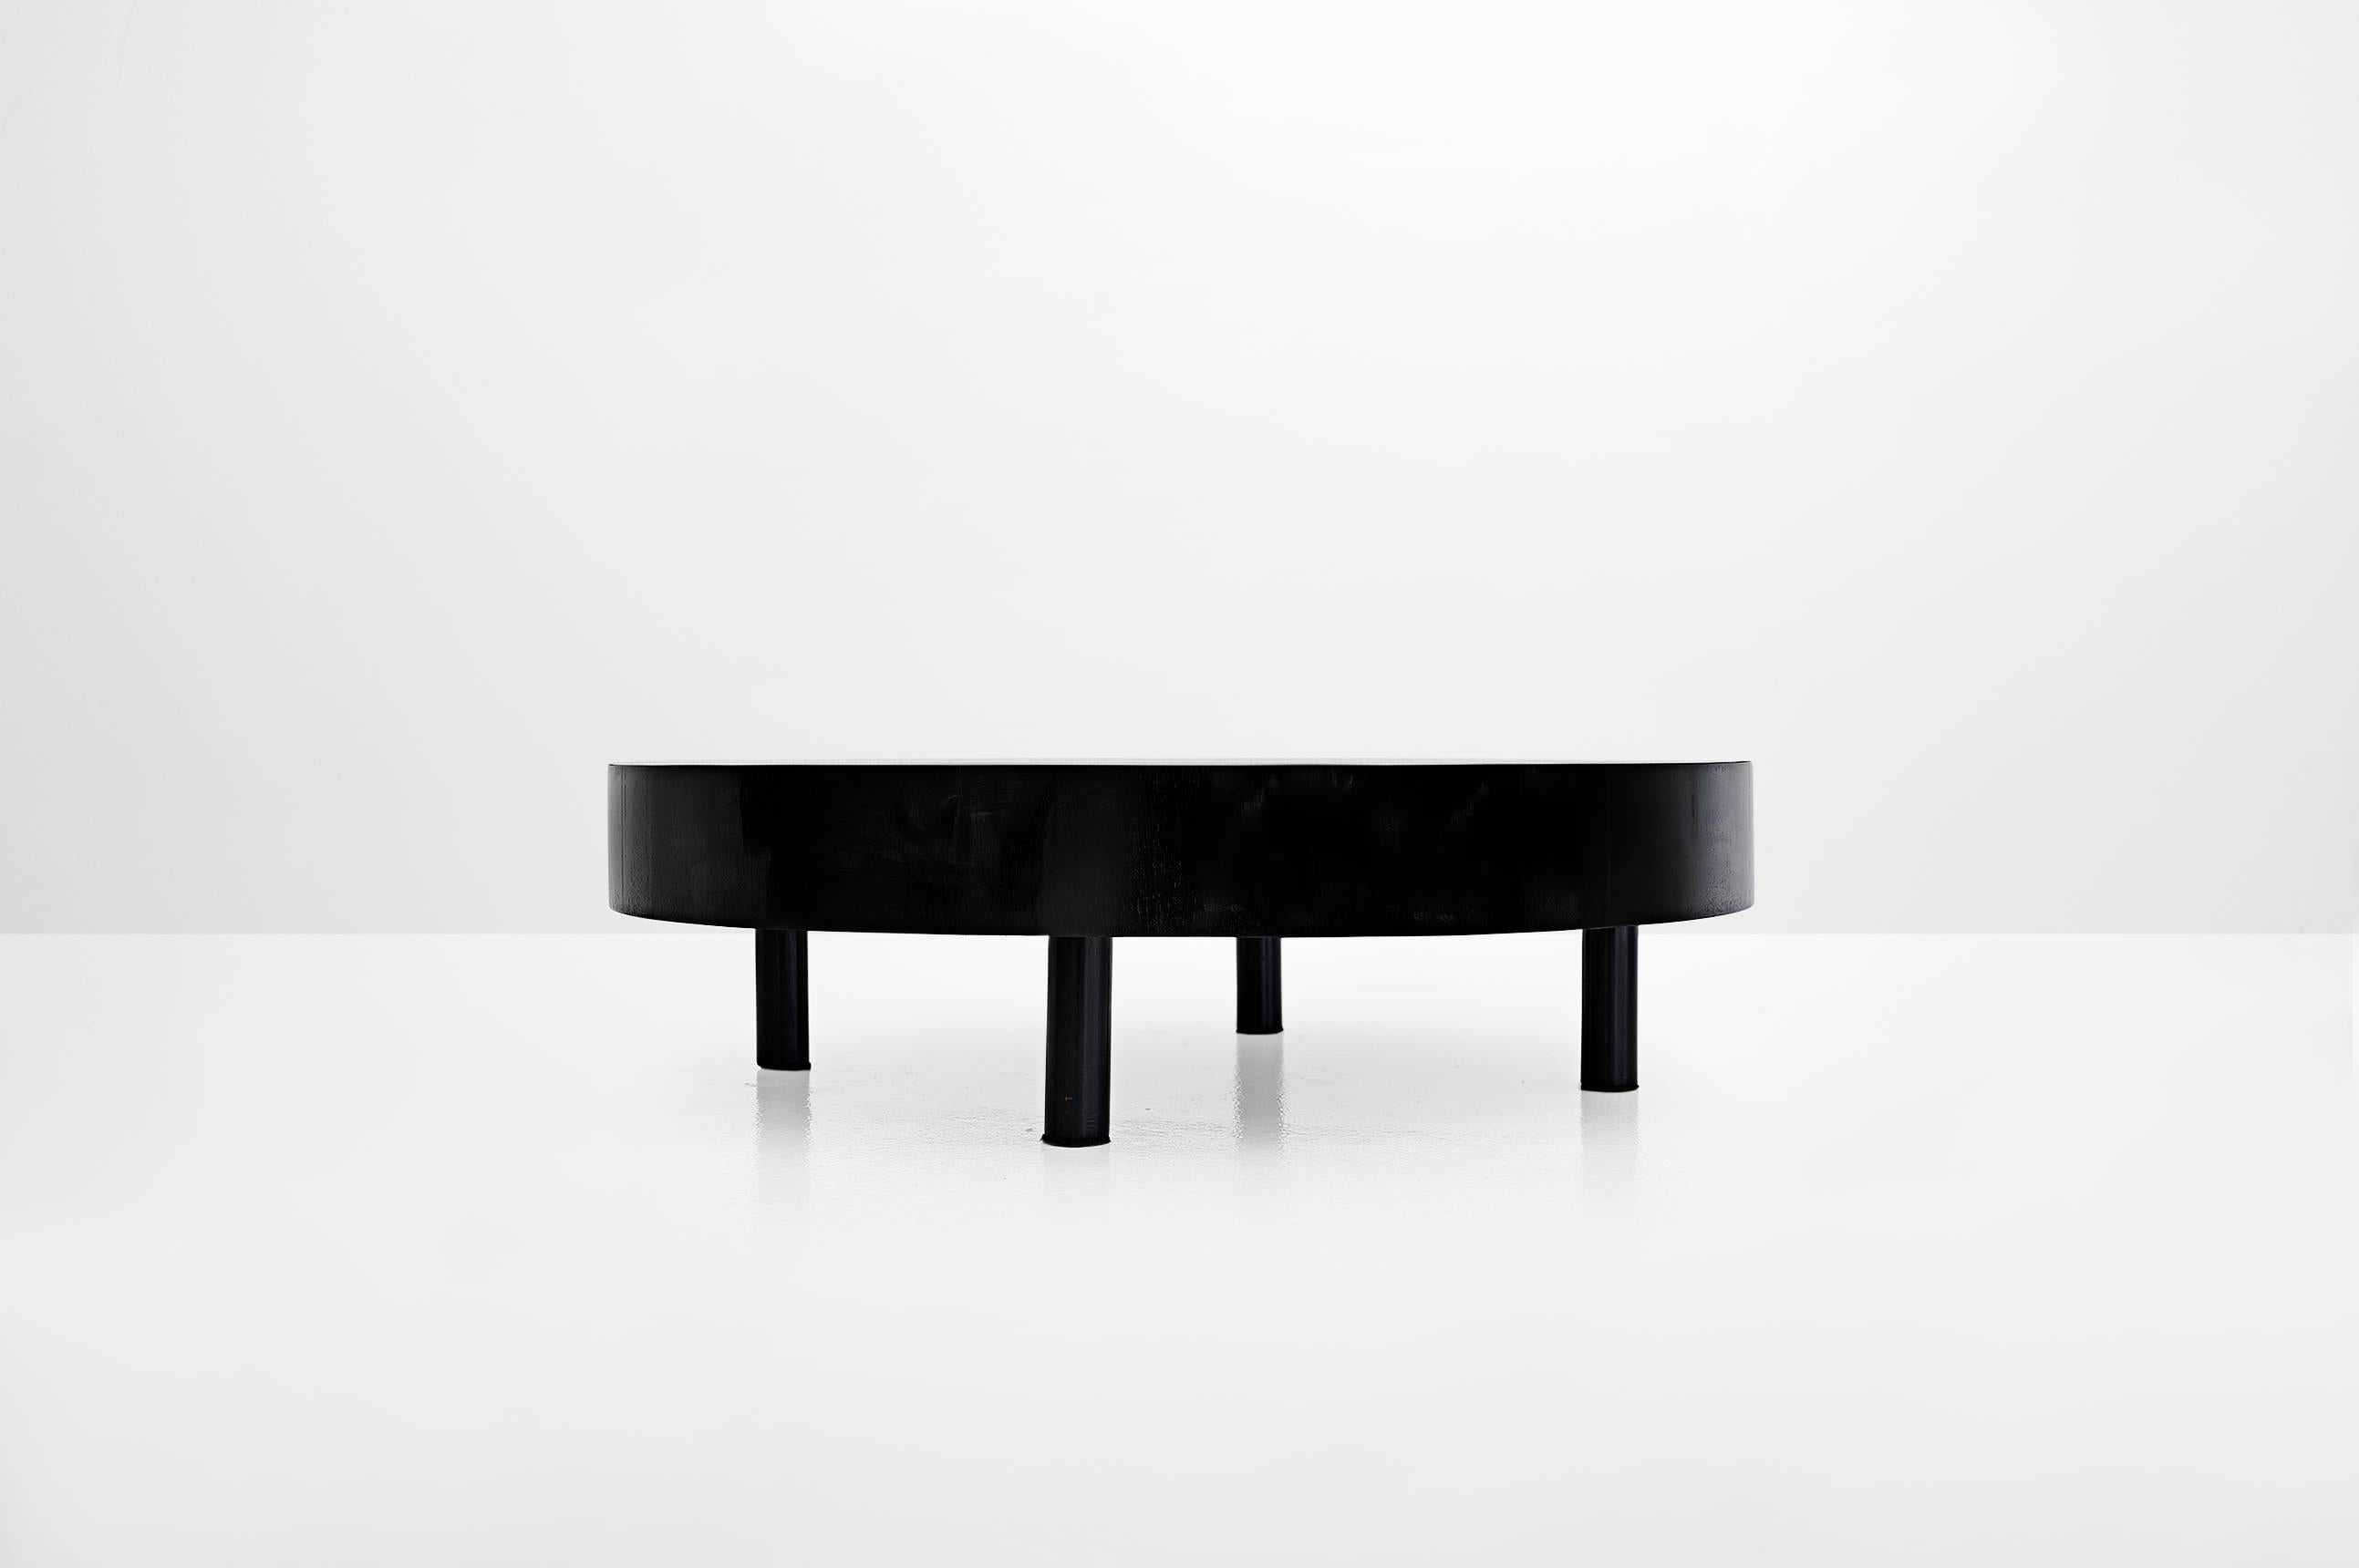 Table basse ronde
Fabriqué par Tepperman
Brasil, 1968
Bois noir laqué

Mesures
99 cm de diamètre x 28 cm de hauteur.
39 pouces de diamètre x 11,4 pouces de hauteur.